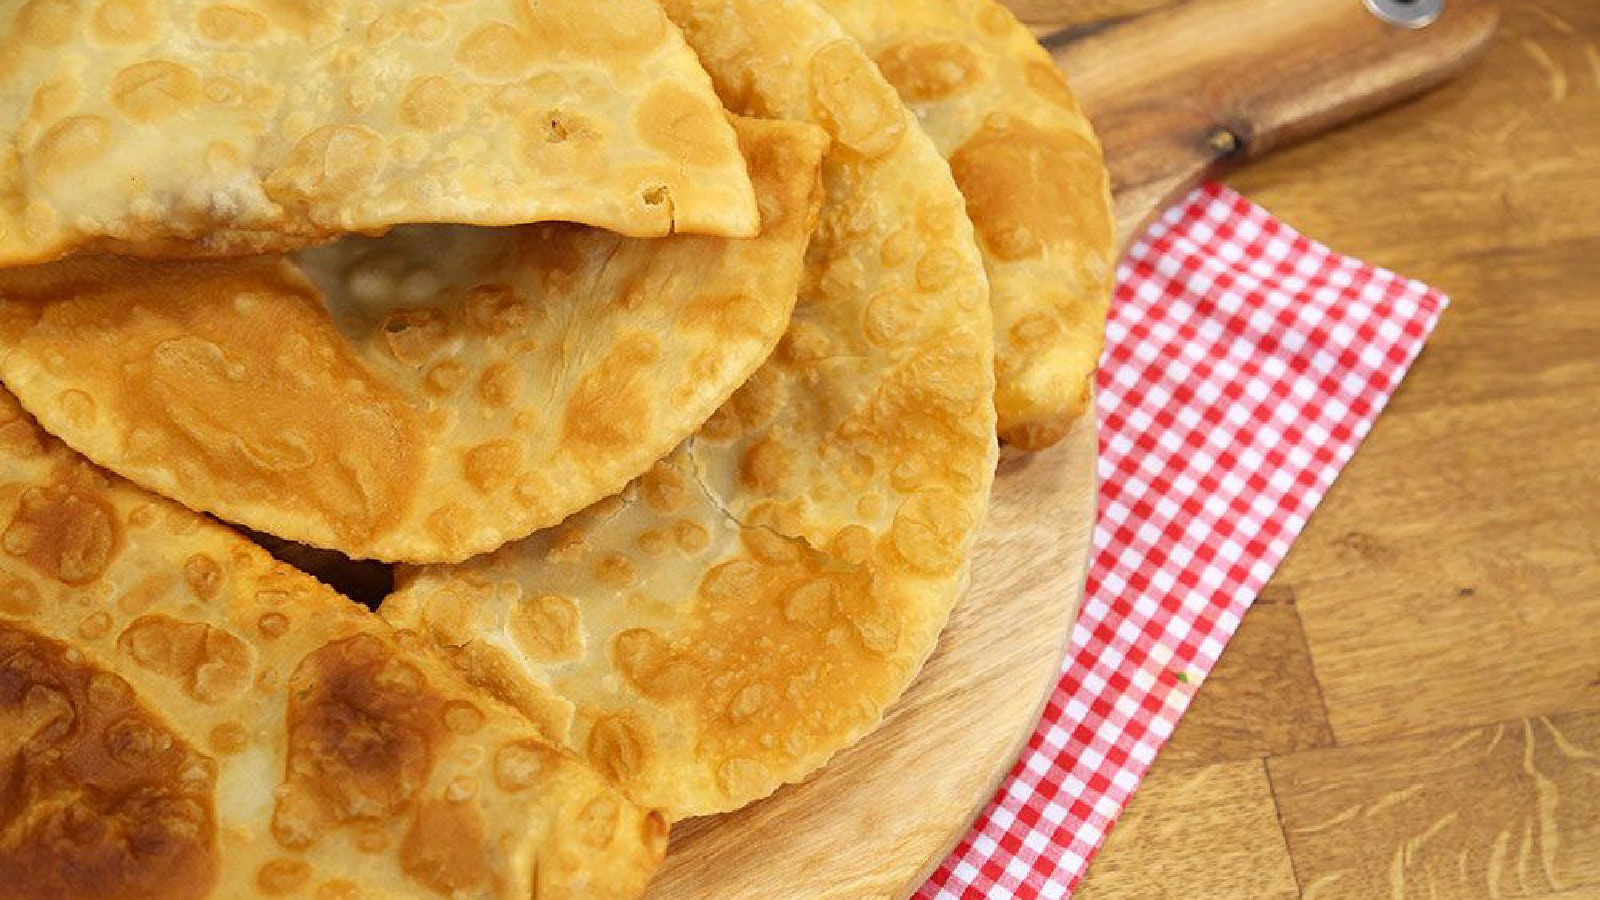 Çiğ börek ya diğer türlü çi börek; kıyma, soğan ve baharat karışımının açılmış yufkaya konulup yağda kızartılmasıyla hazırlanan geleneksel bir "Kırım Tatar" lezzetidir.